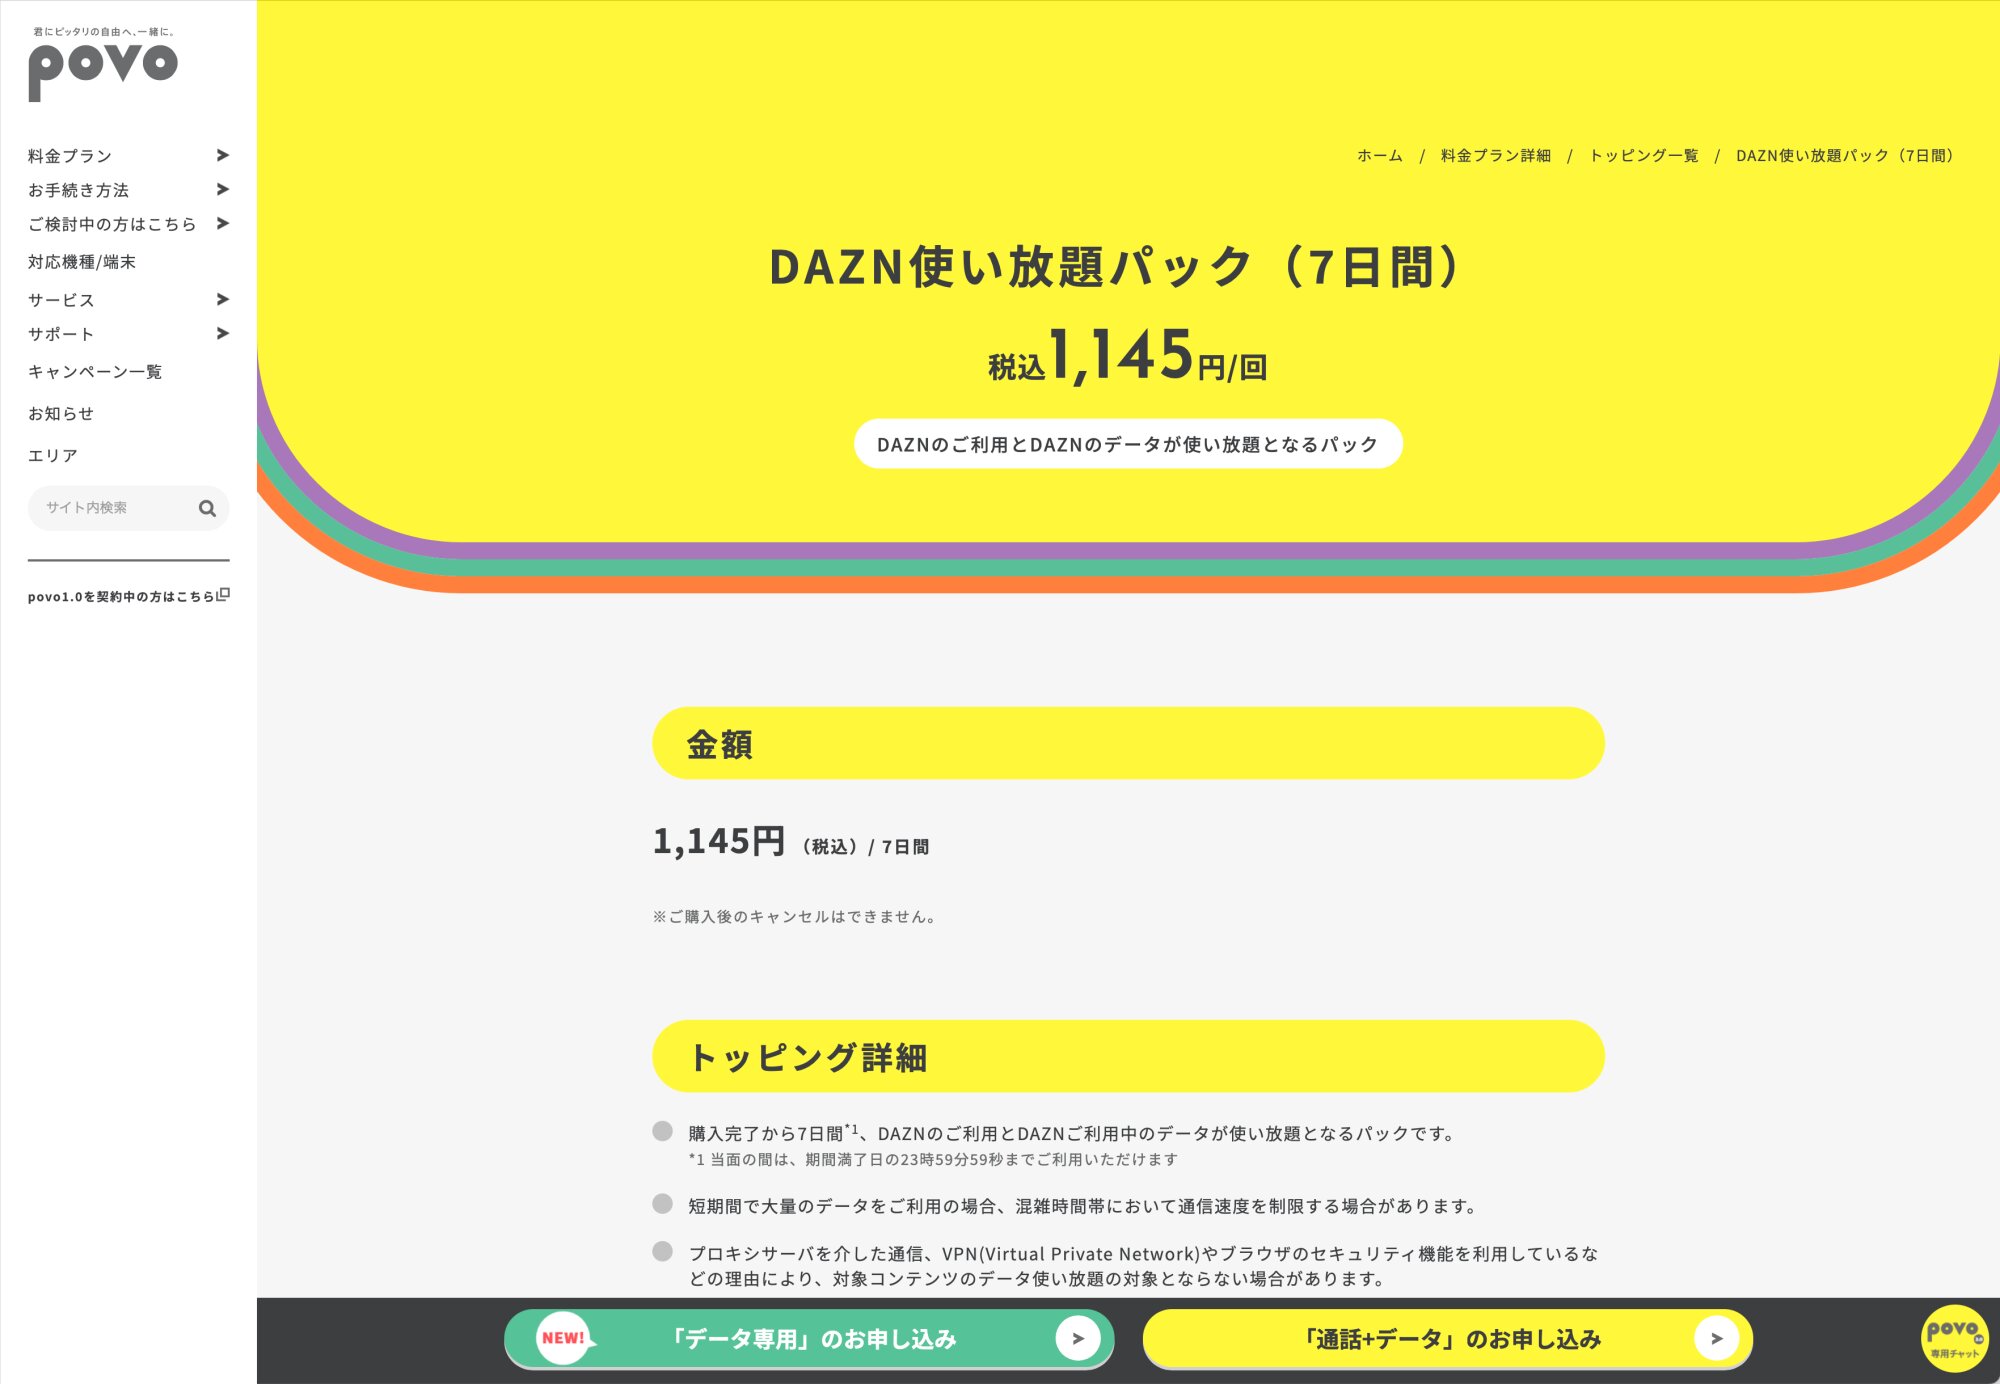 ▲『DAZN』のご利用と『DAZN』のデータが使い放題となるパック「DAZN使い放題パック（7日間）」。利用の際には、トッピング詳細もよく読んでおこう。